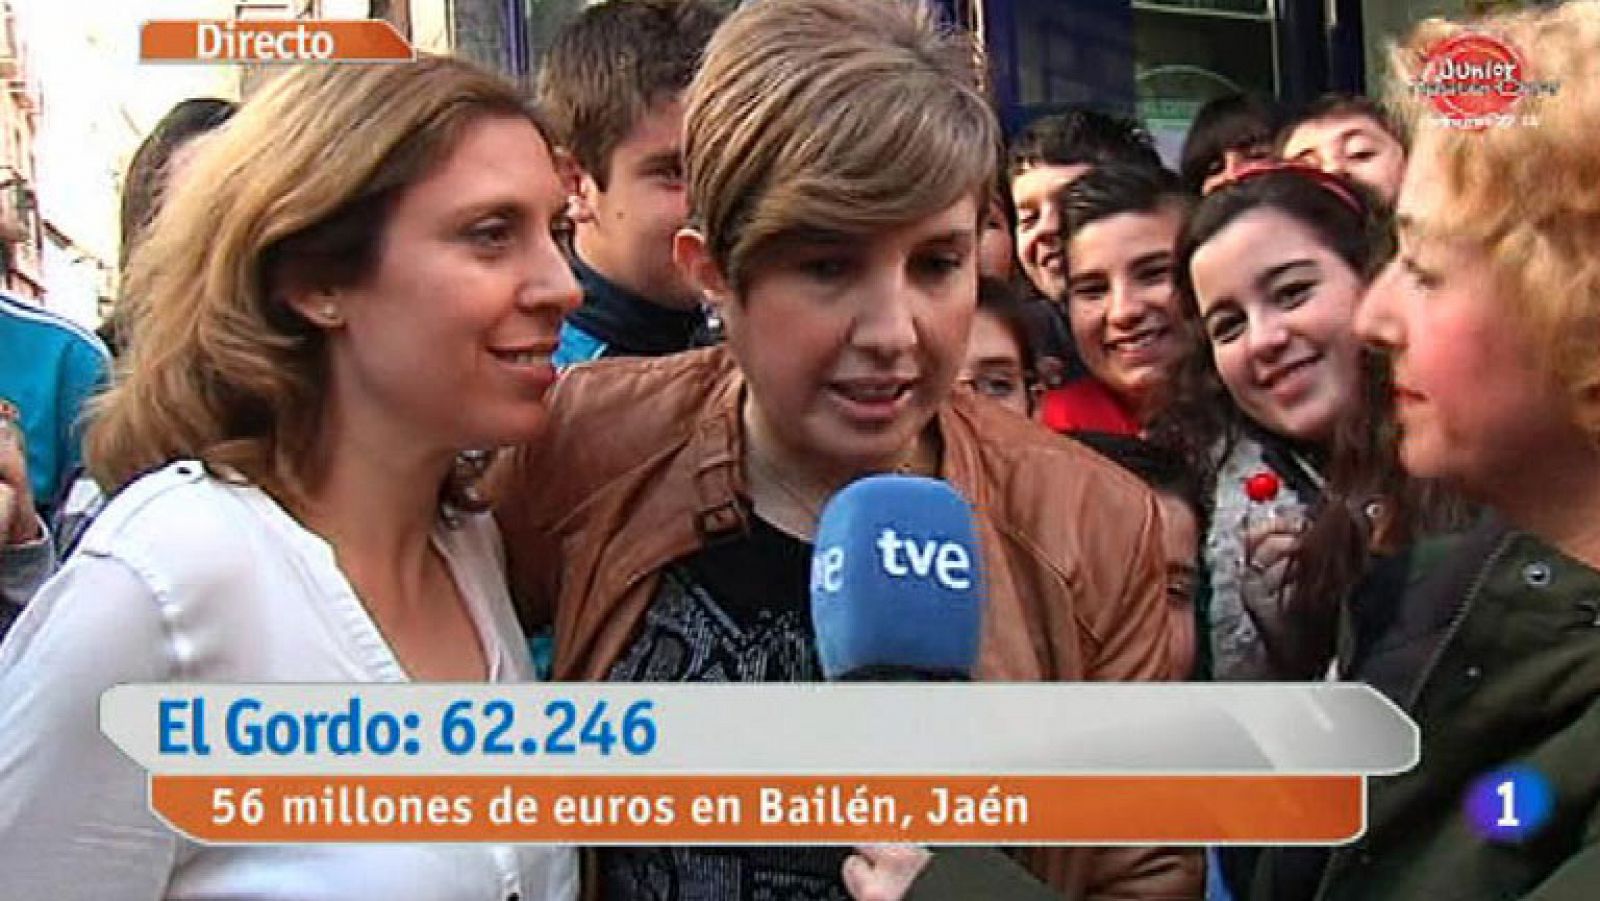 La mañana de La 1 - Bailén celebra el Gordo | RTVE.es